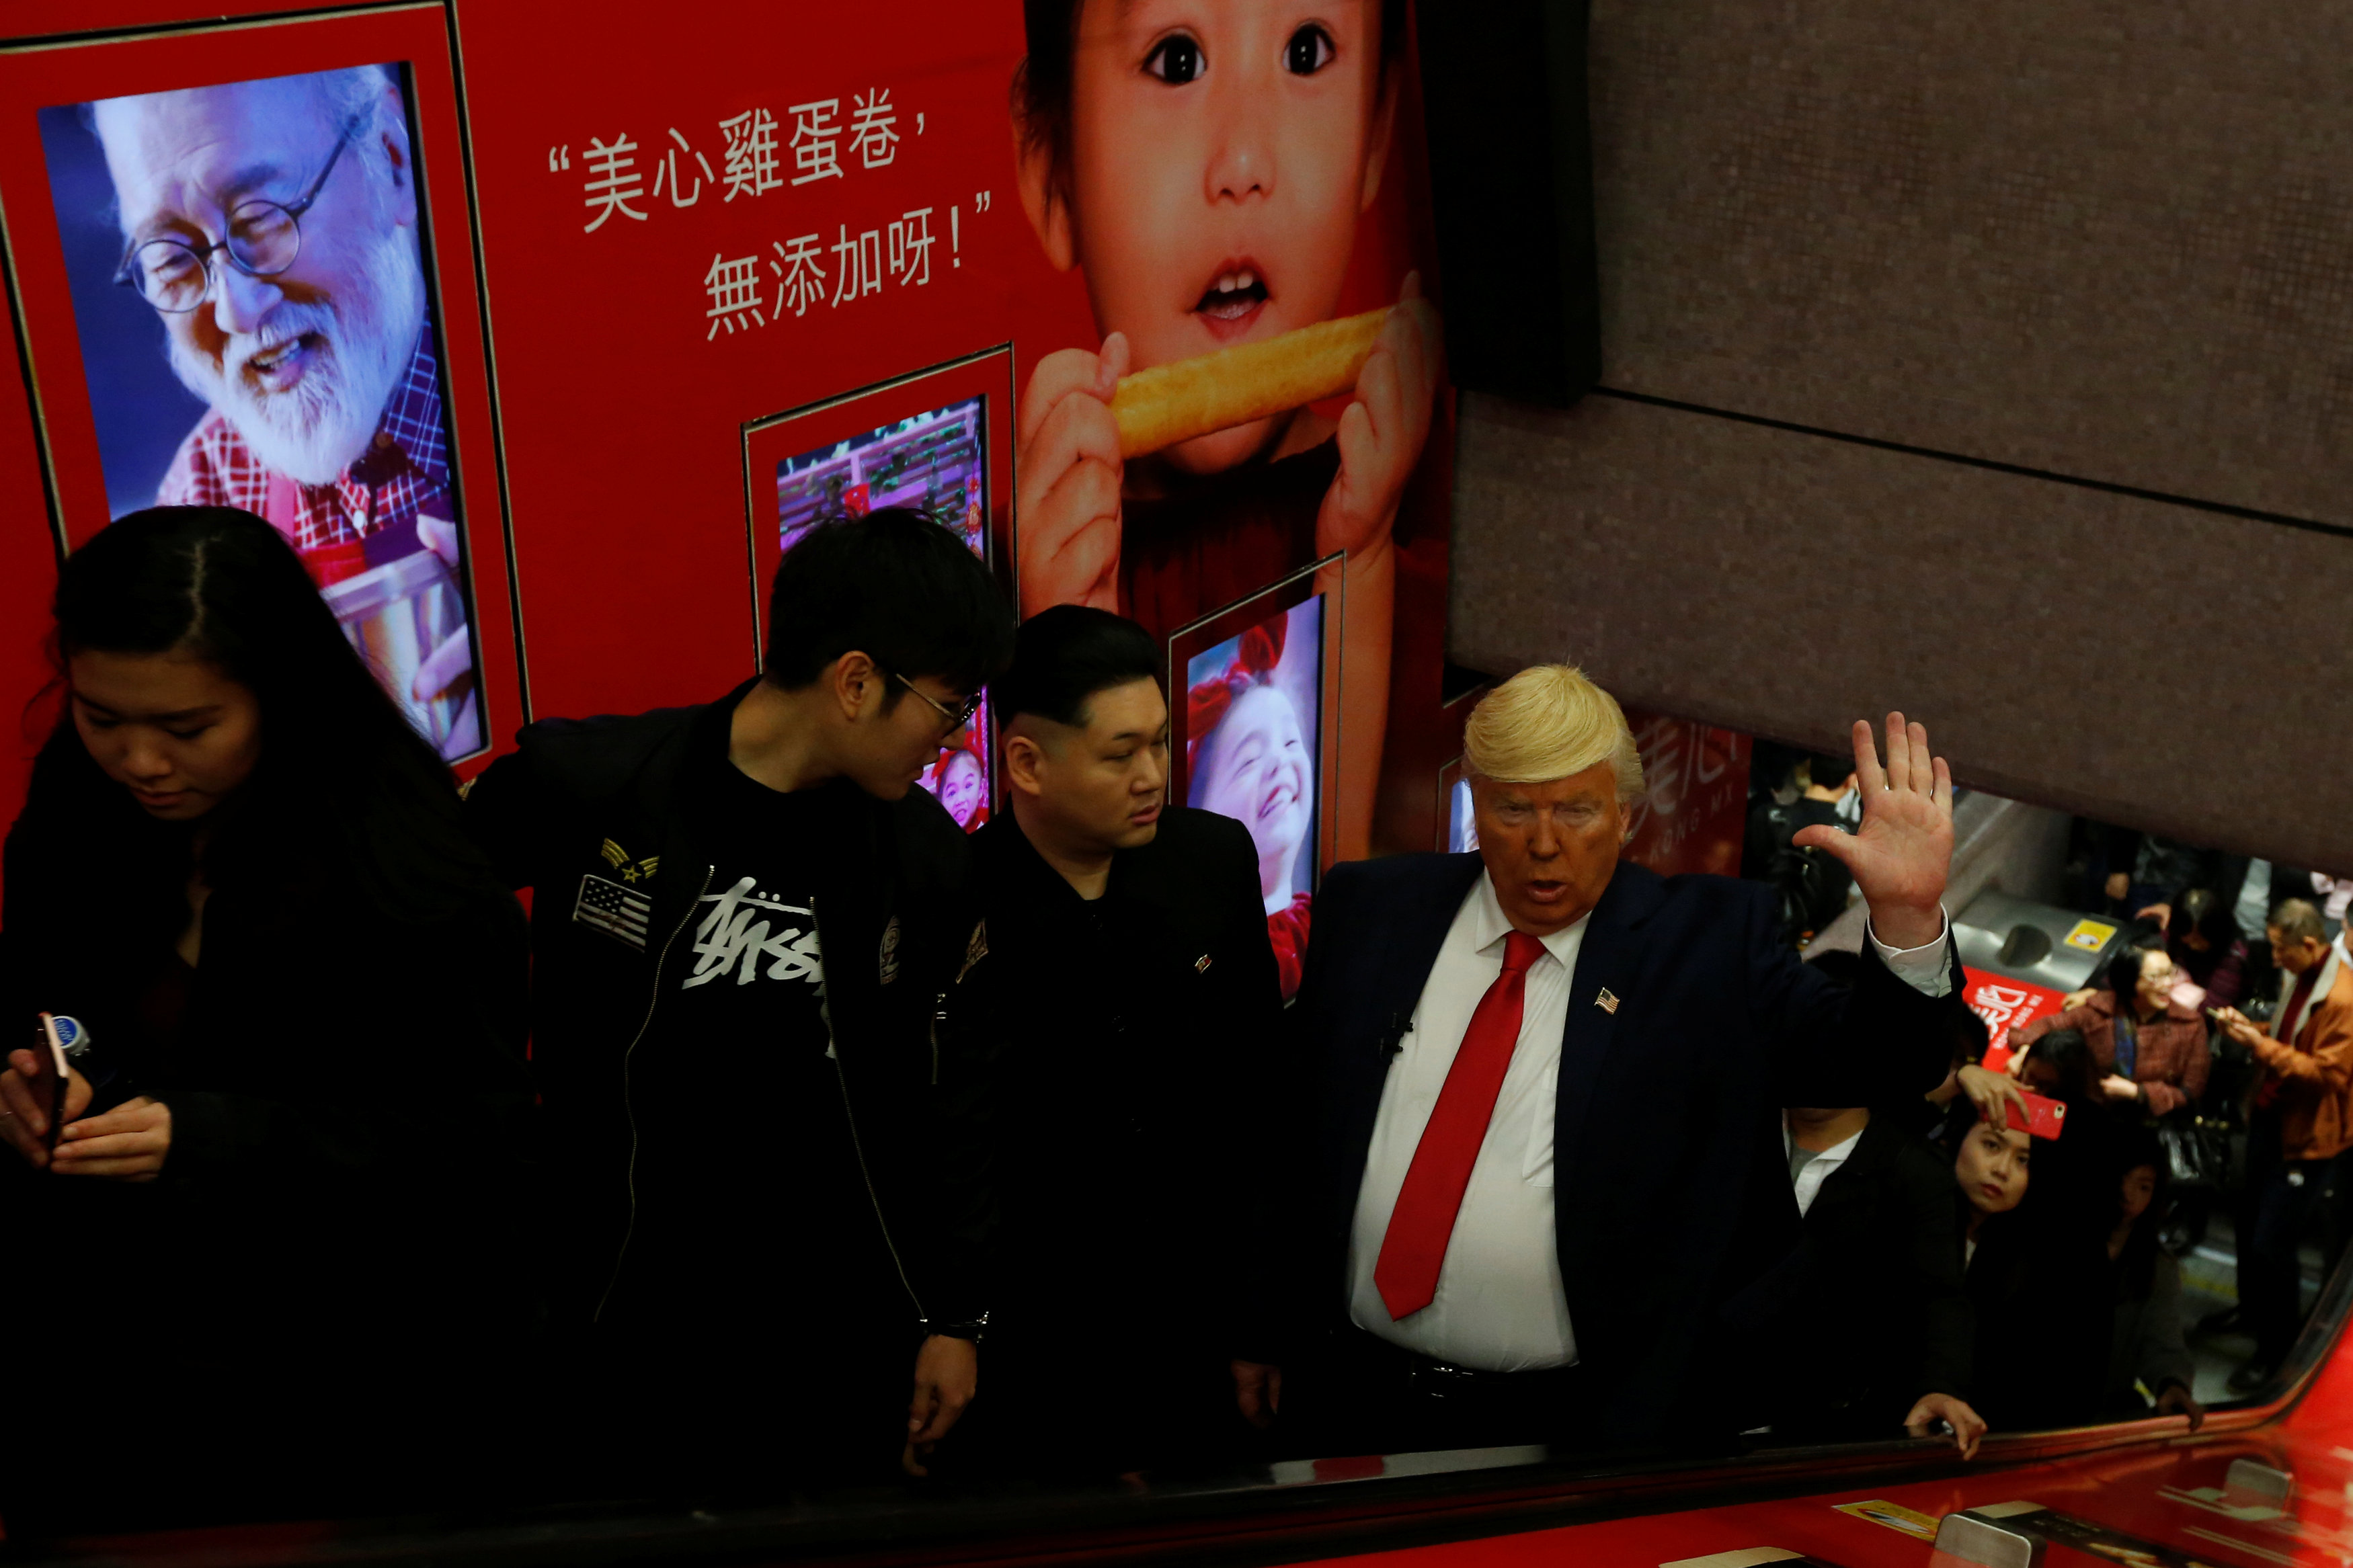 	رئيس أمريكا وزعيم كوريا الشمالية الافتراضيان فى مول تجارى بهونج كونج